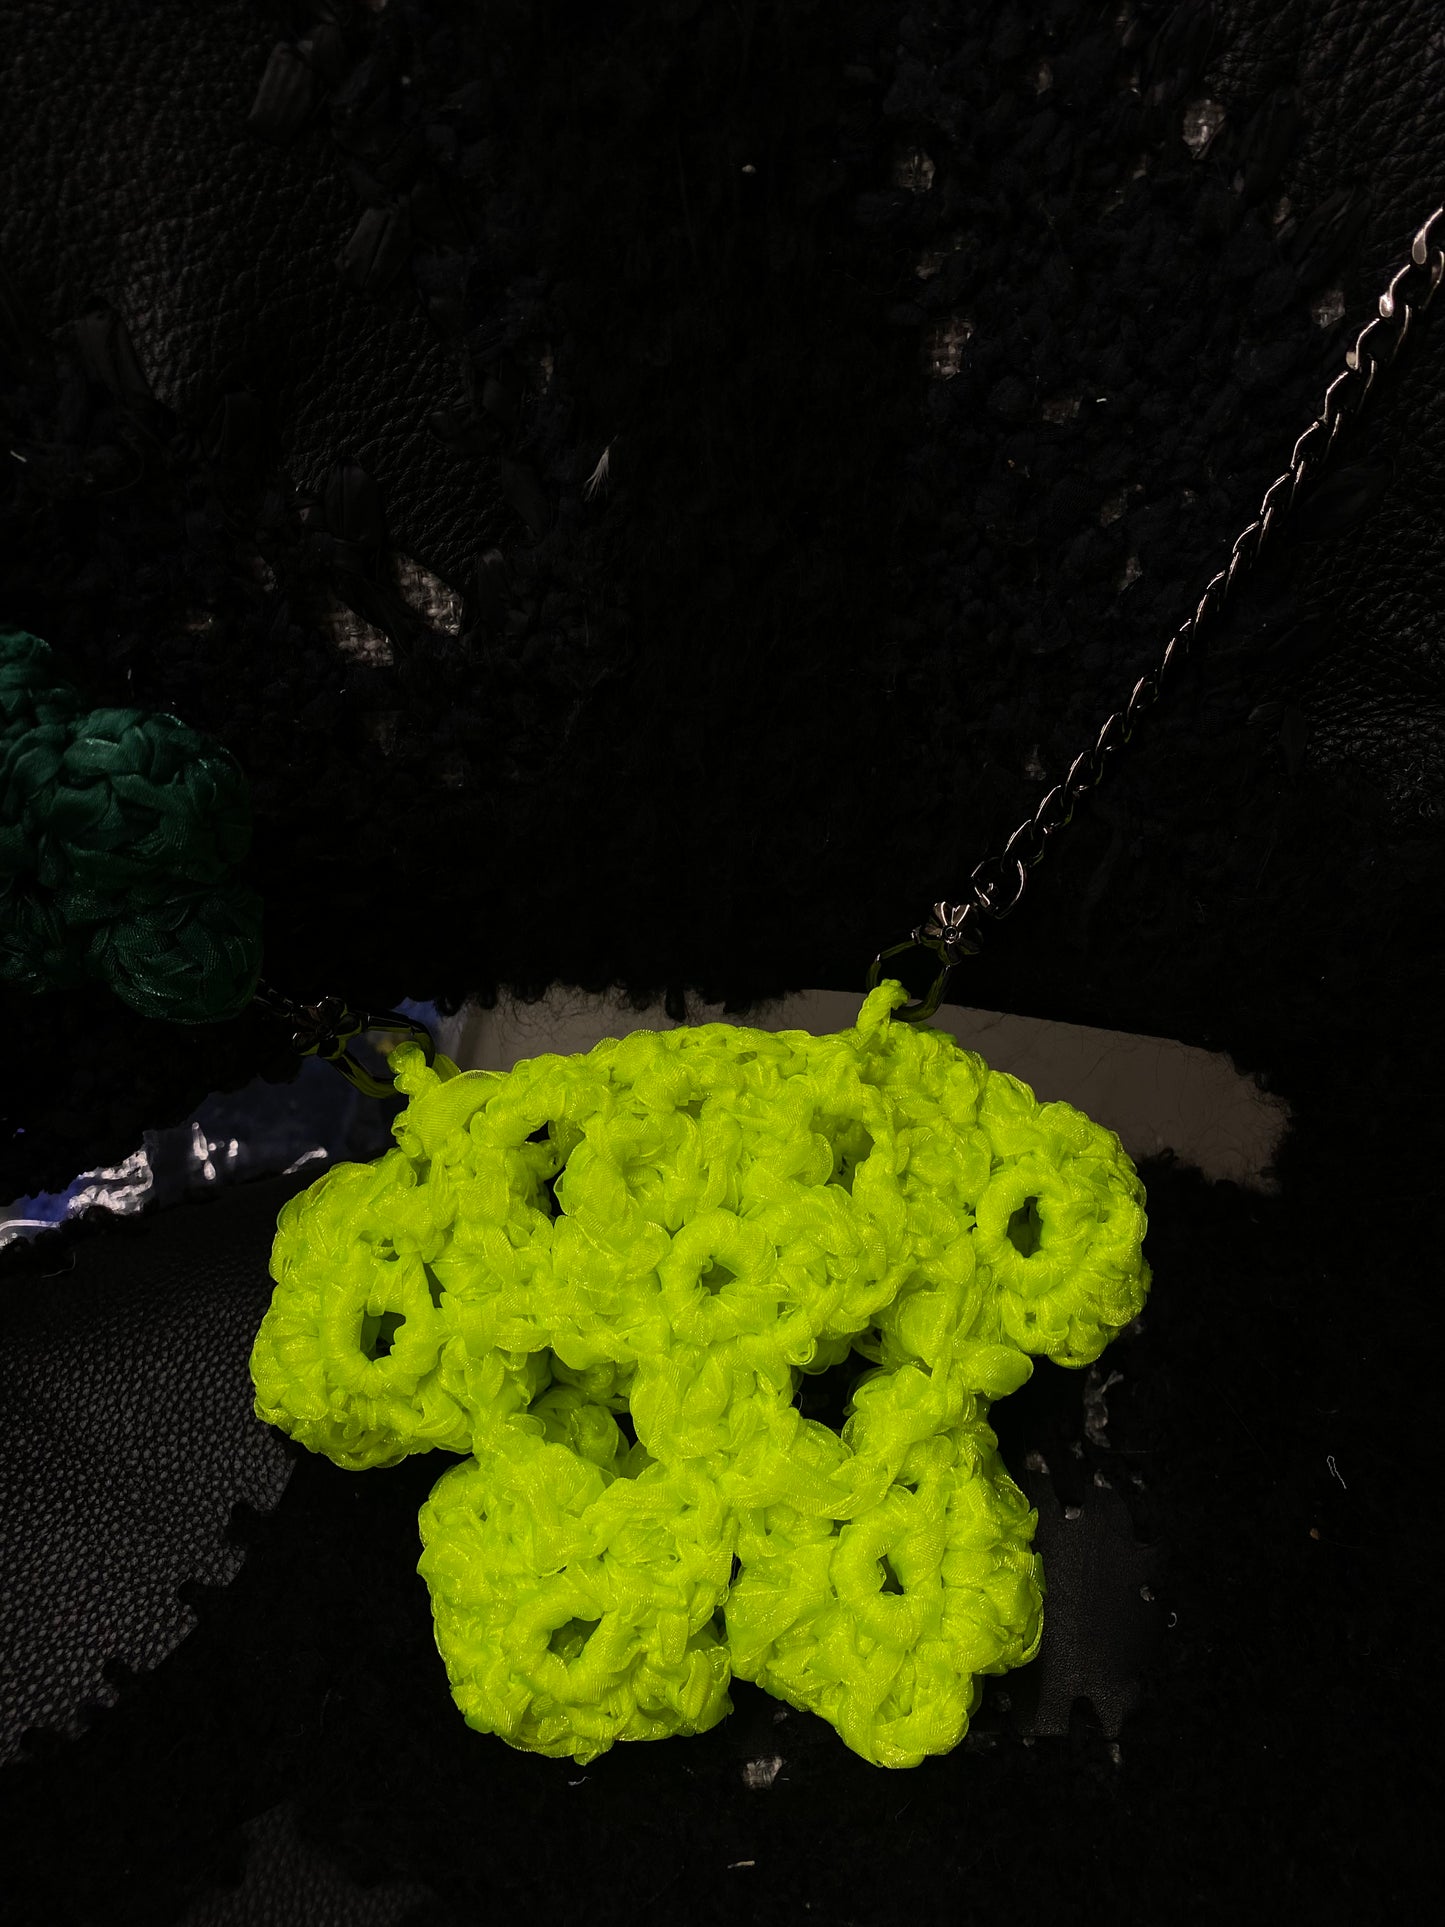 Hand Crochet Flower Pocket  Bag _ Neon Green